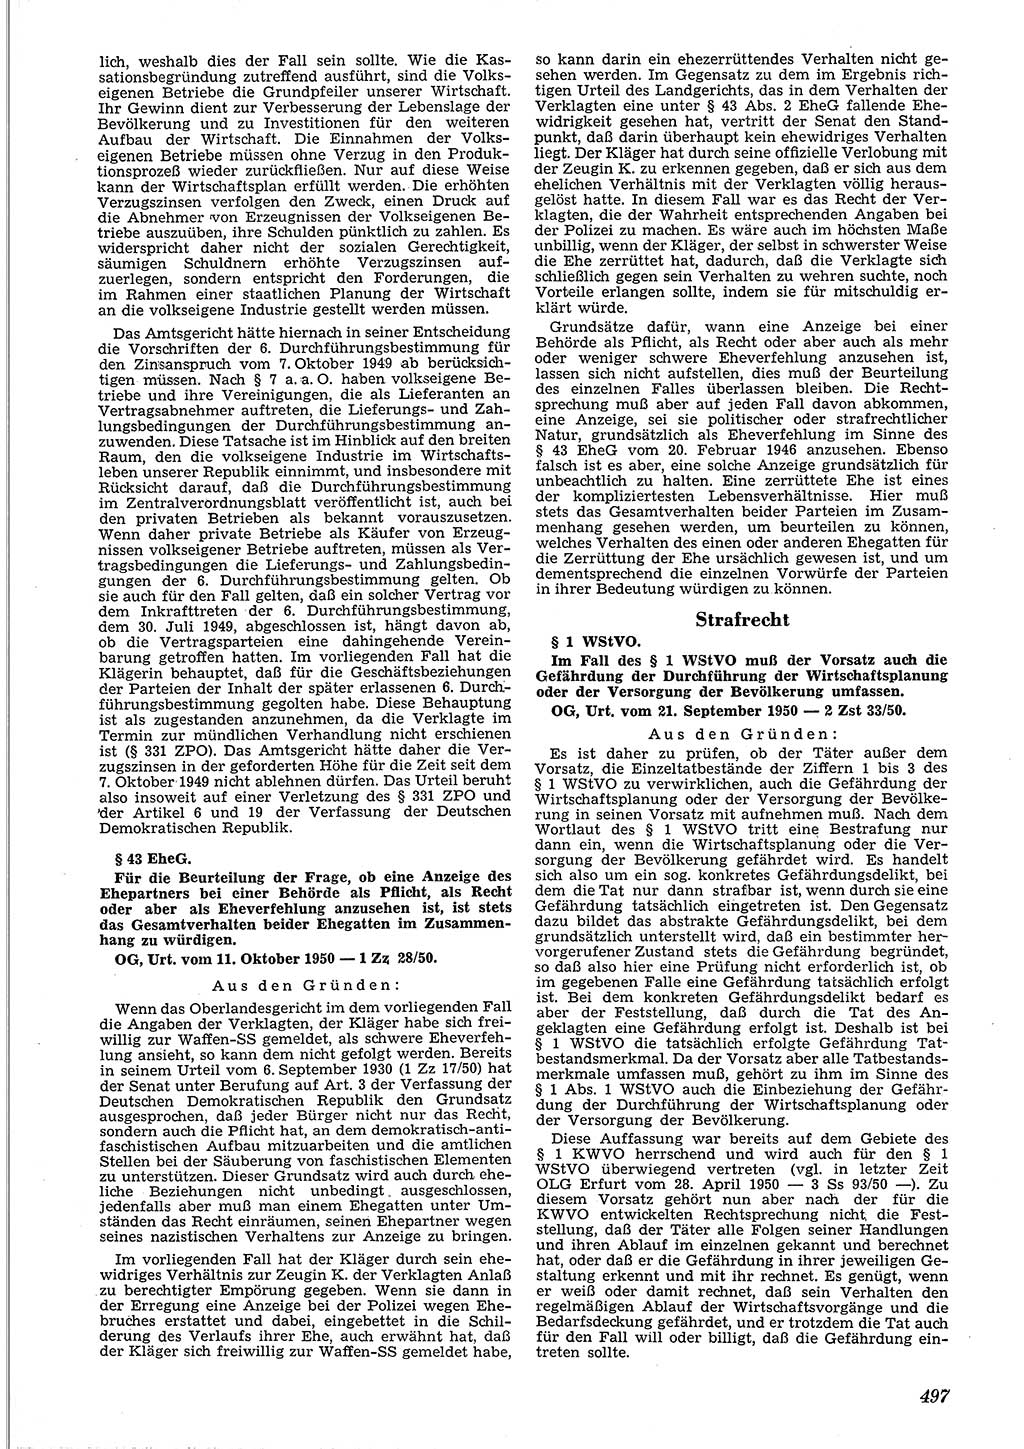 Neue Justiz (NJ), Zeitschrift für Recht und Rechtswissenschaft [Deutsche Demokratische Republik (DDR)], 4. Jahrgang 1950, Seite 497 (NJ DDR 1950, S. 497)